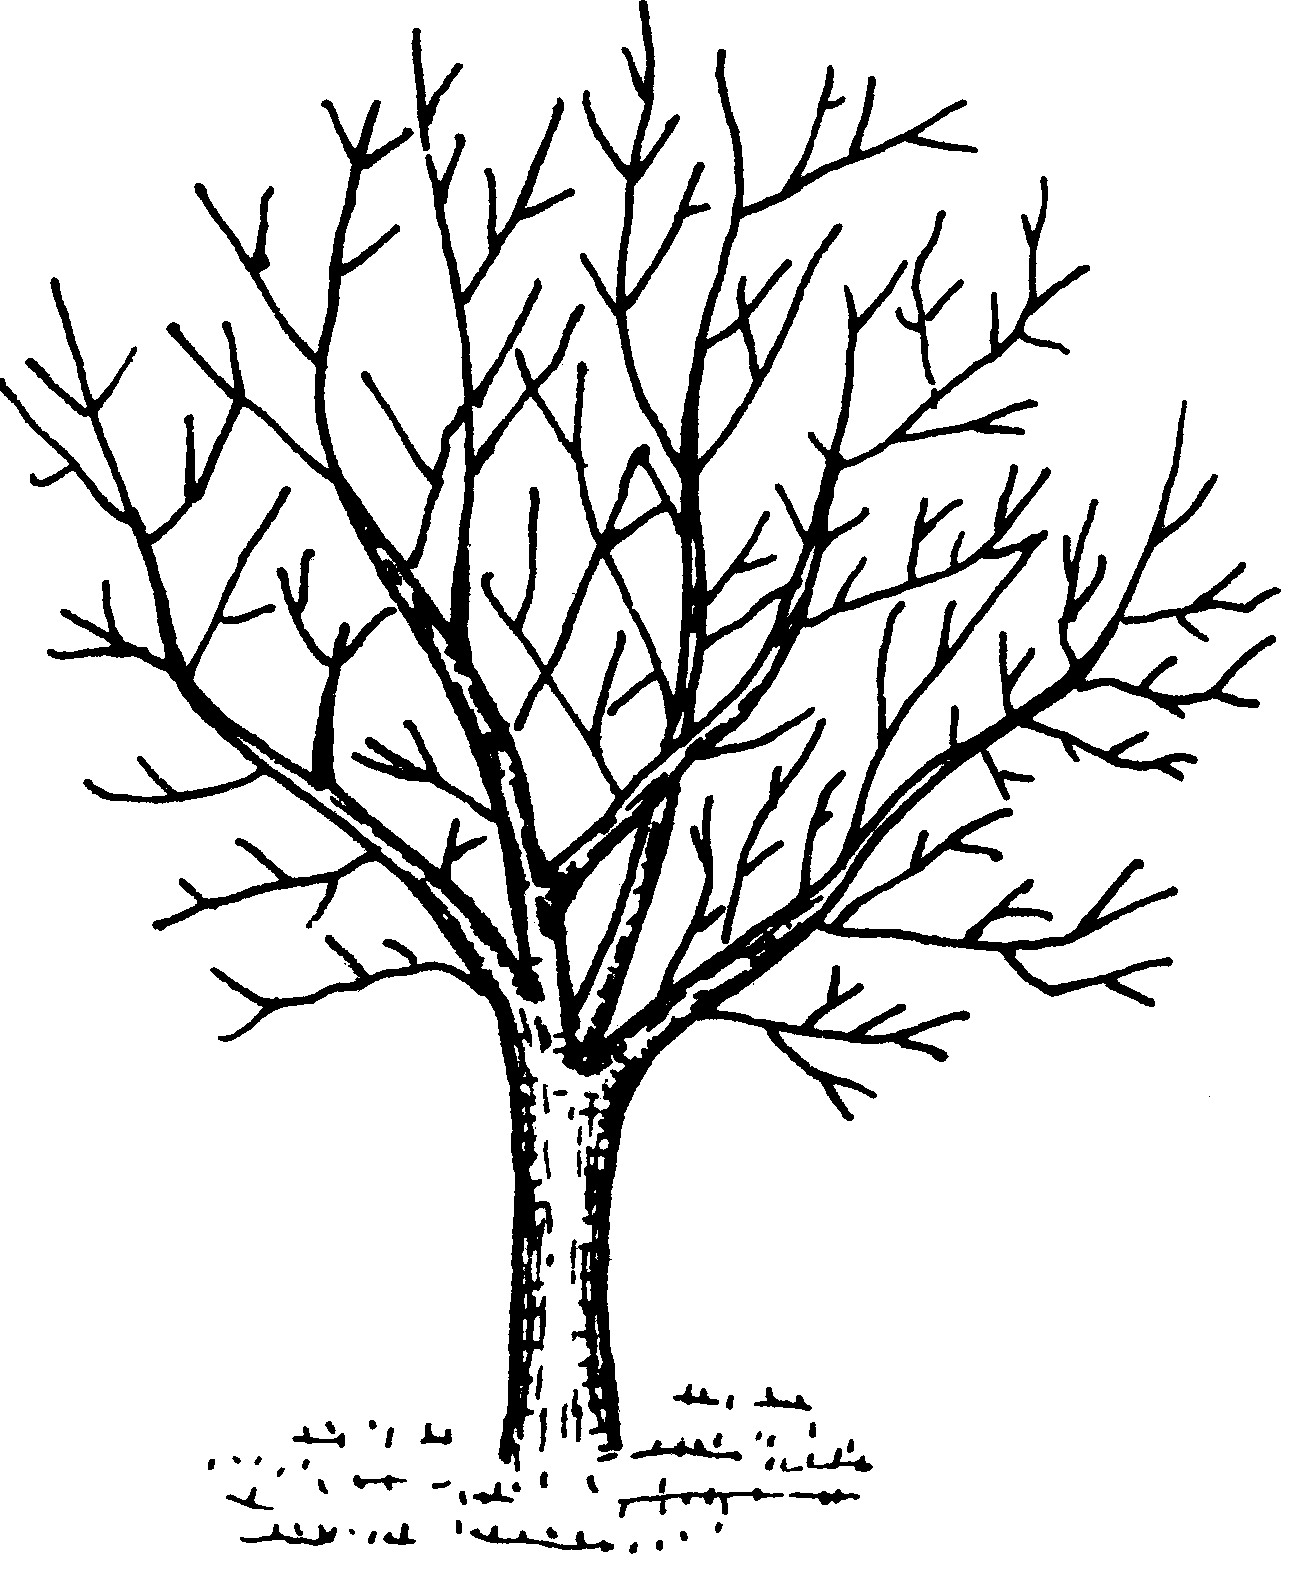 (二)主要丰产树形及其特点